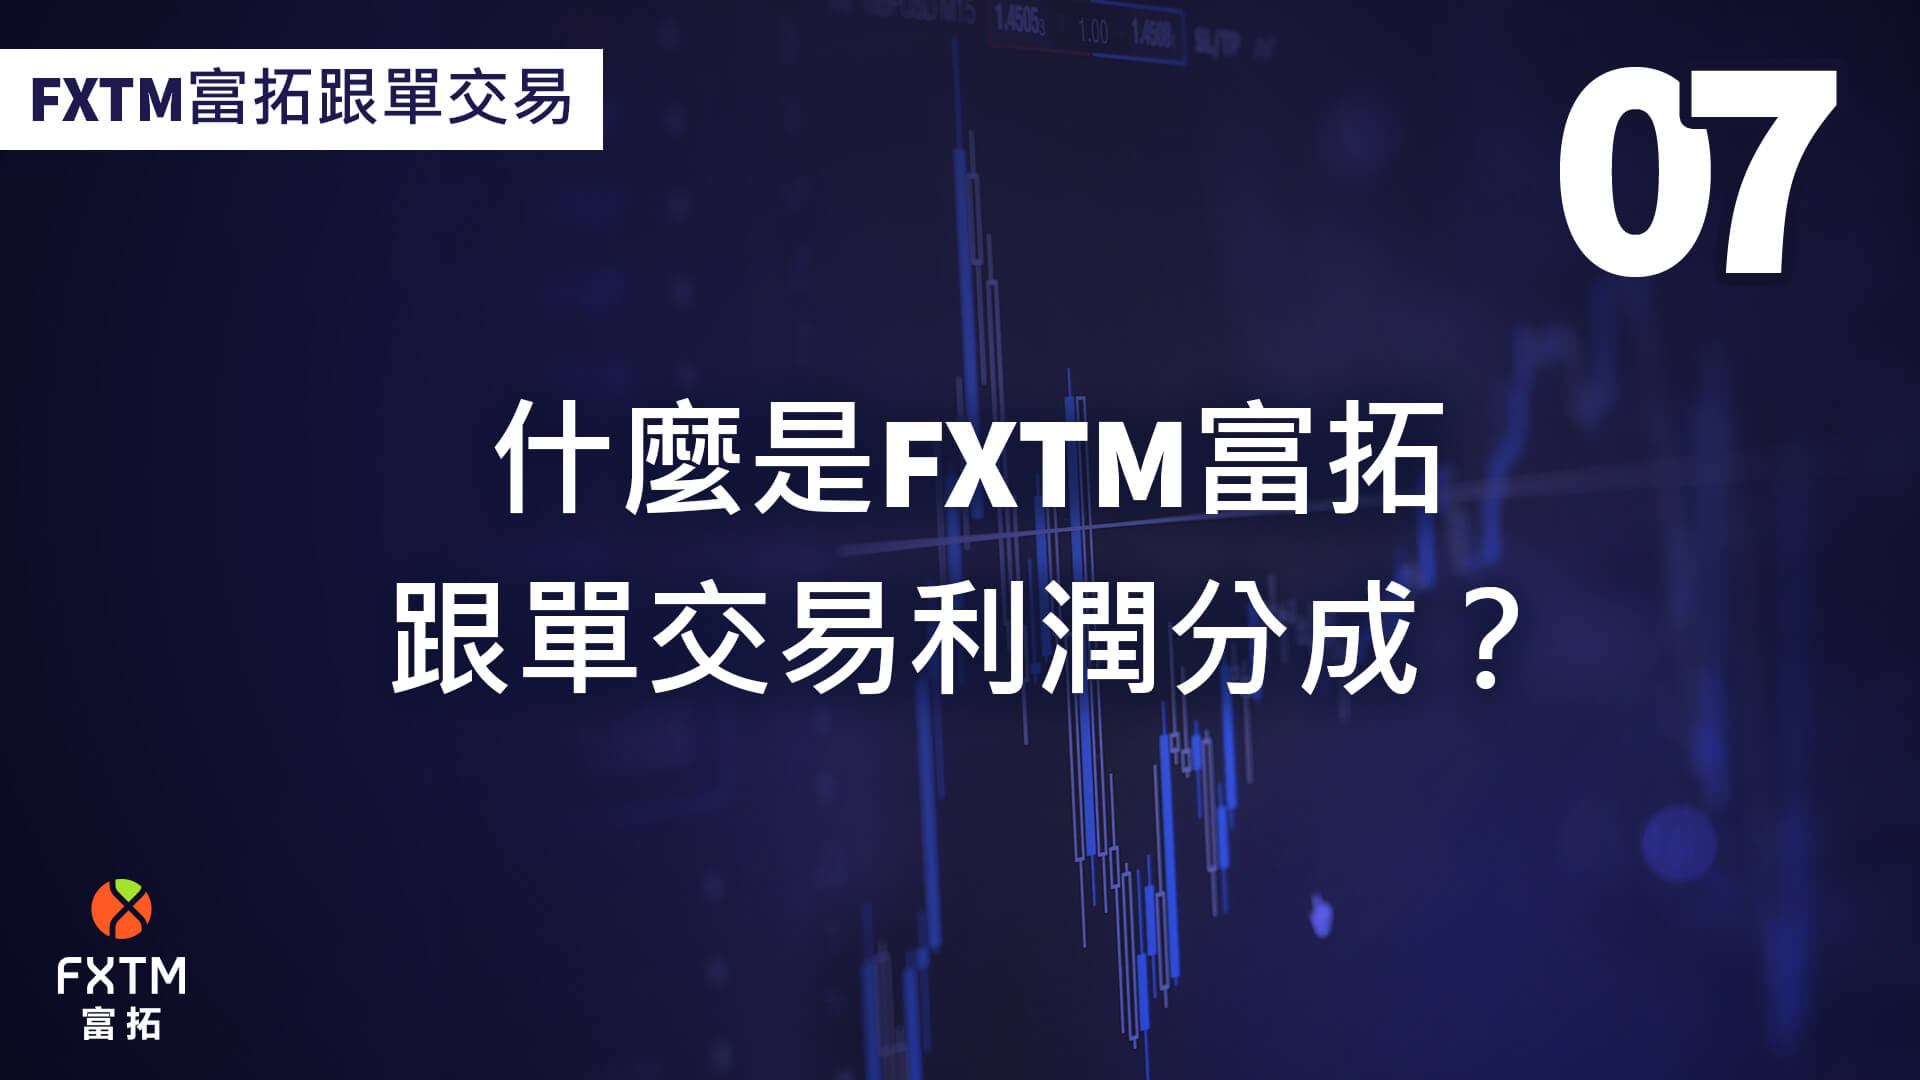 什麼是FXTM富拓跟單交易利潤分成？ 